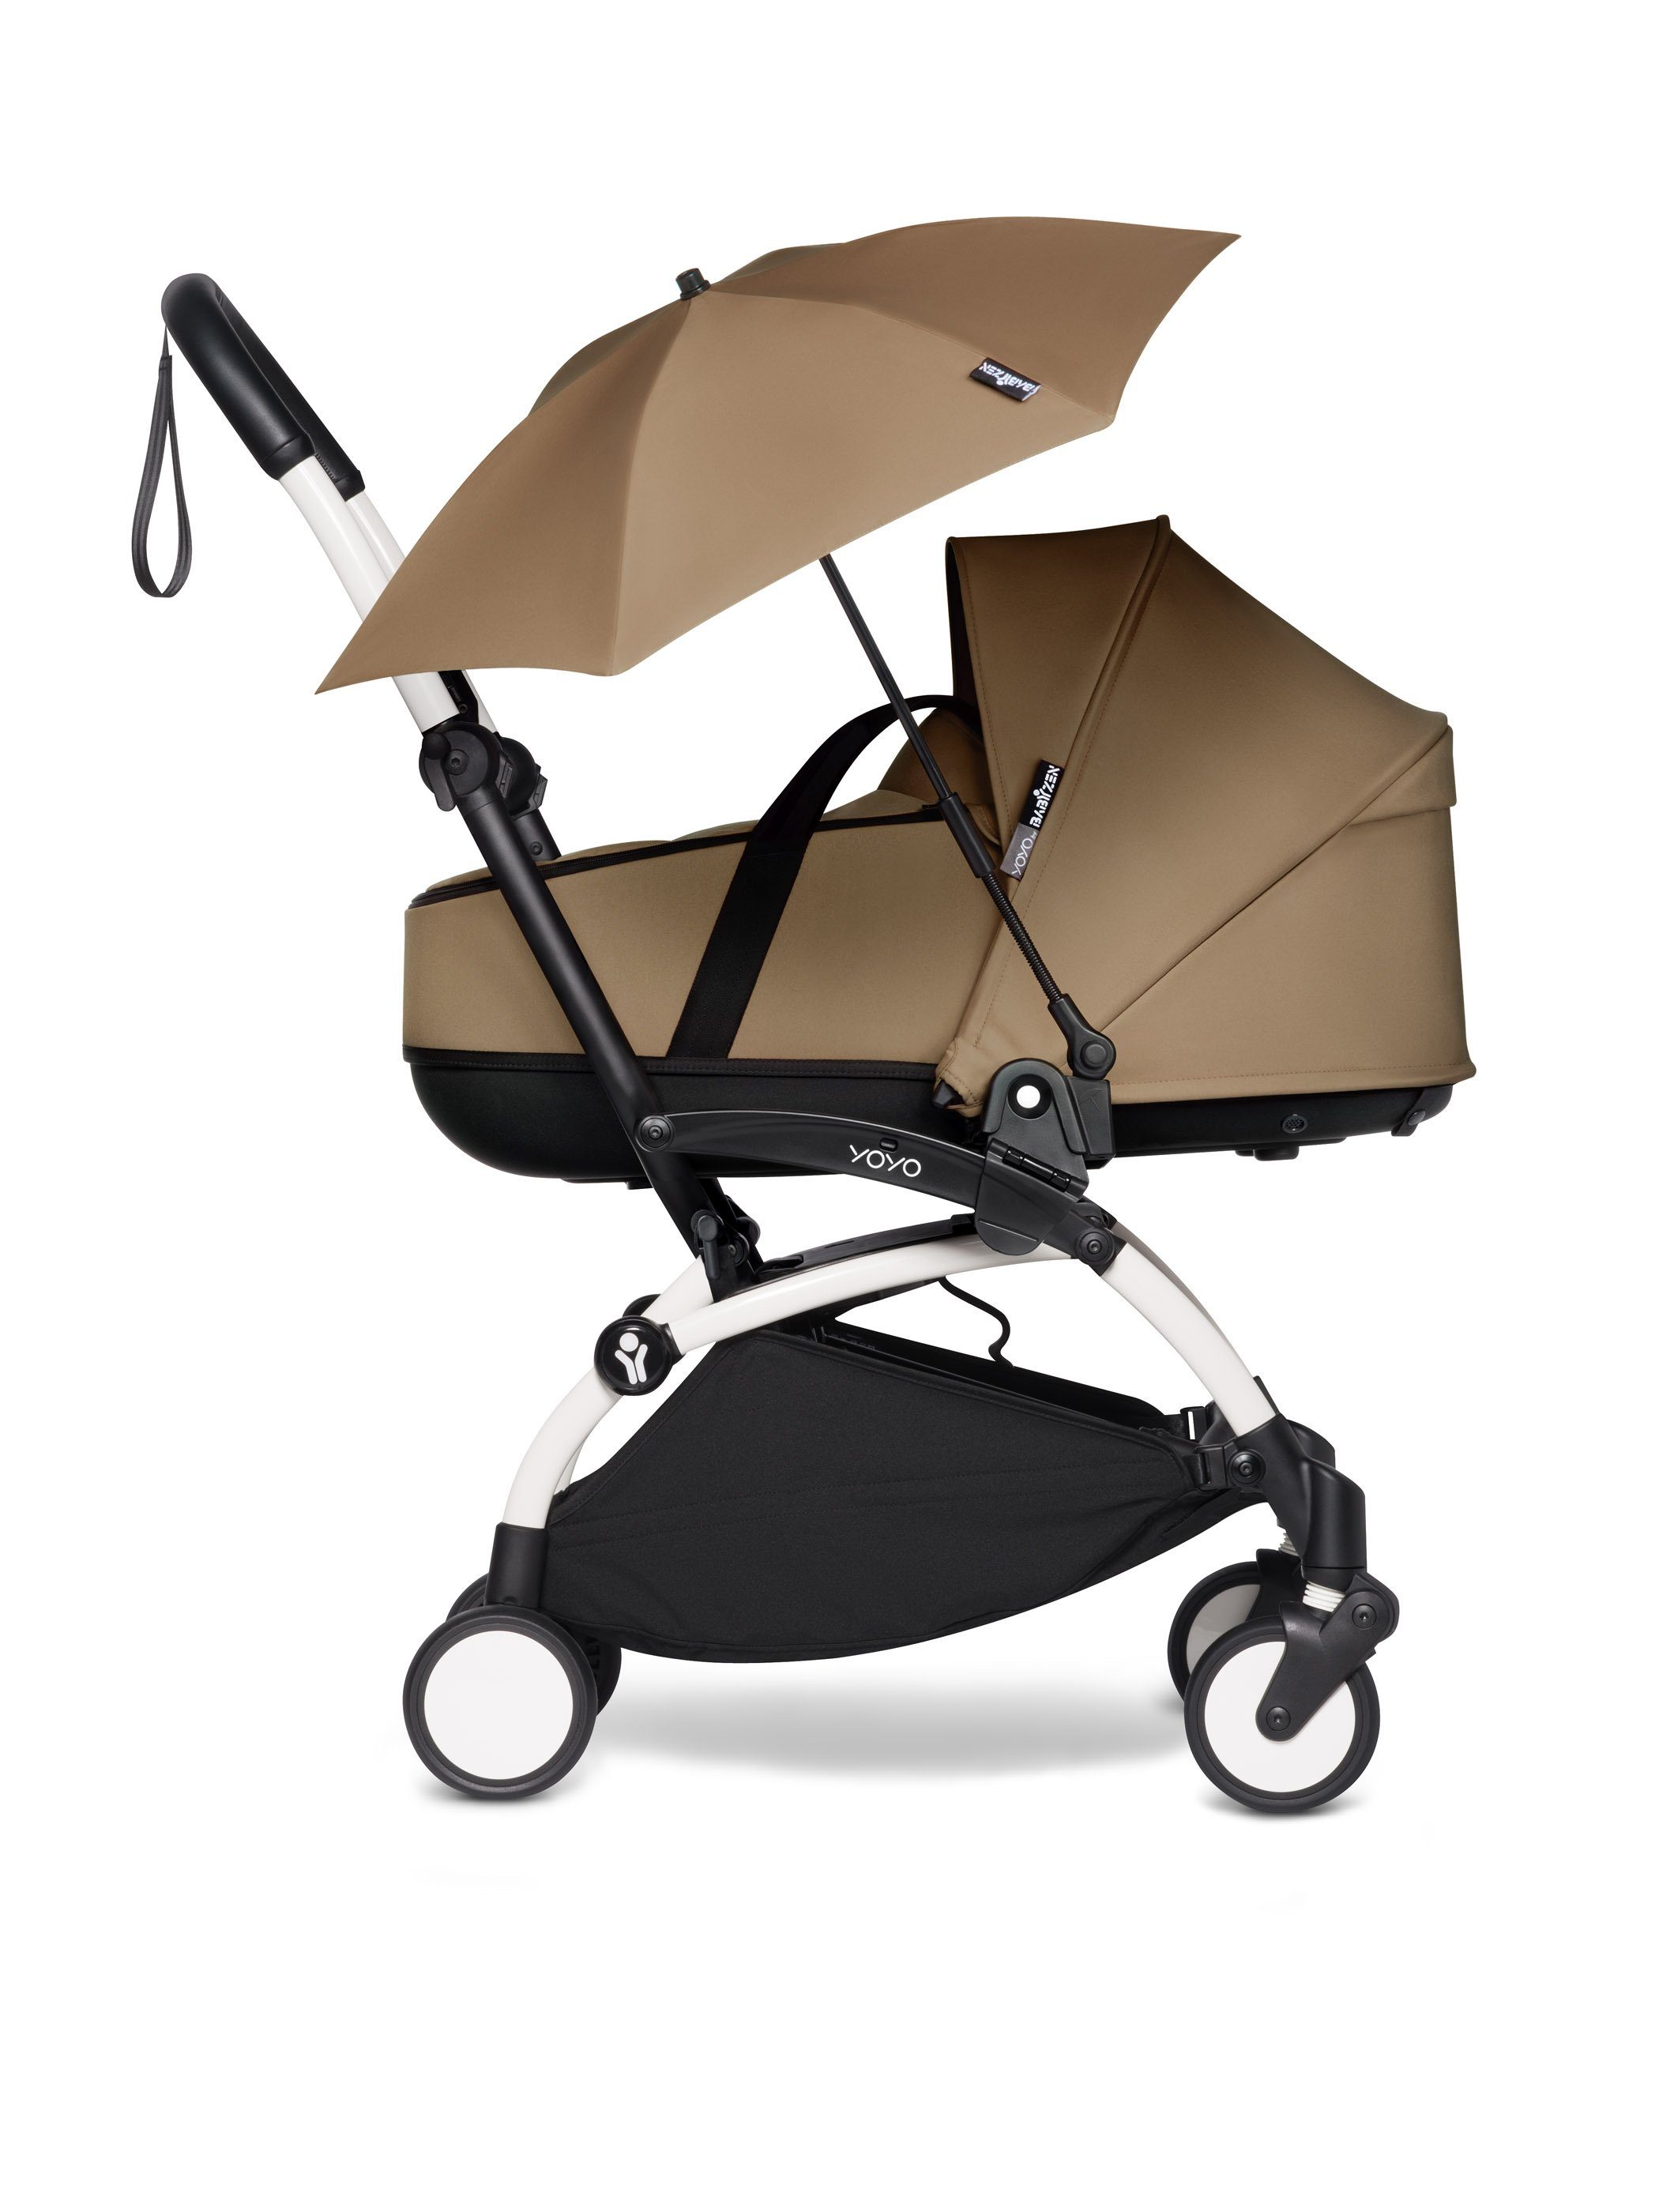 Sonnenschirm YOYO BABYZEN das Toffee / Kinderwagenschirm Regenschirm für Gestell